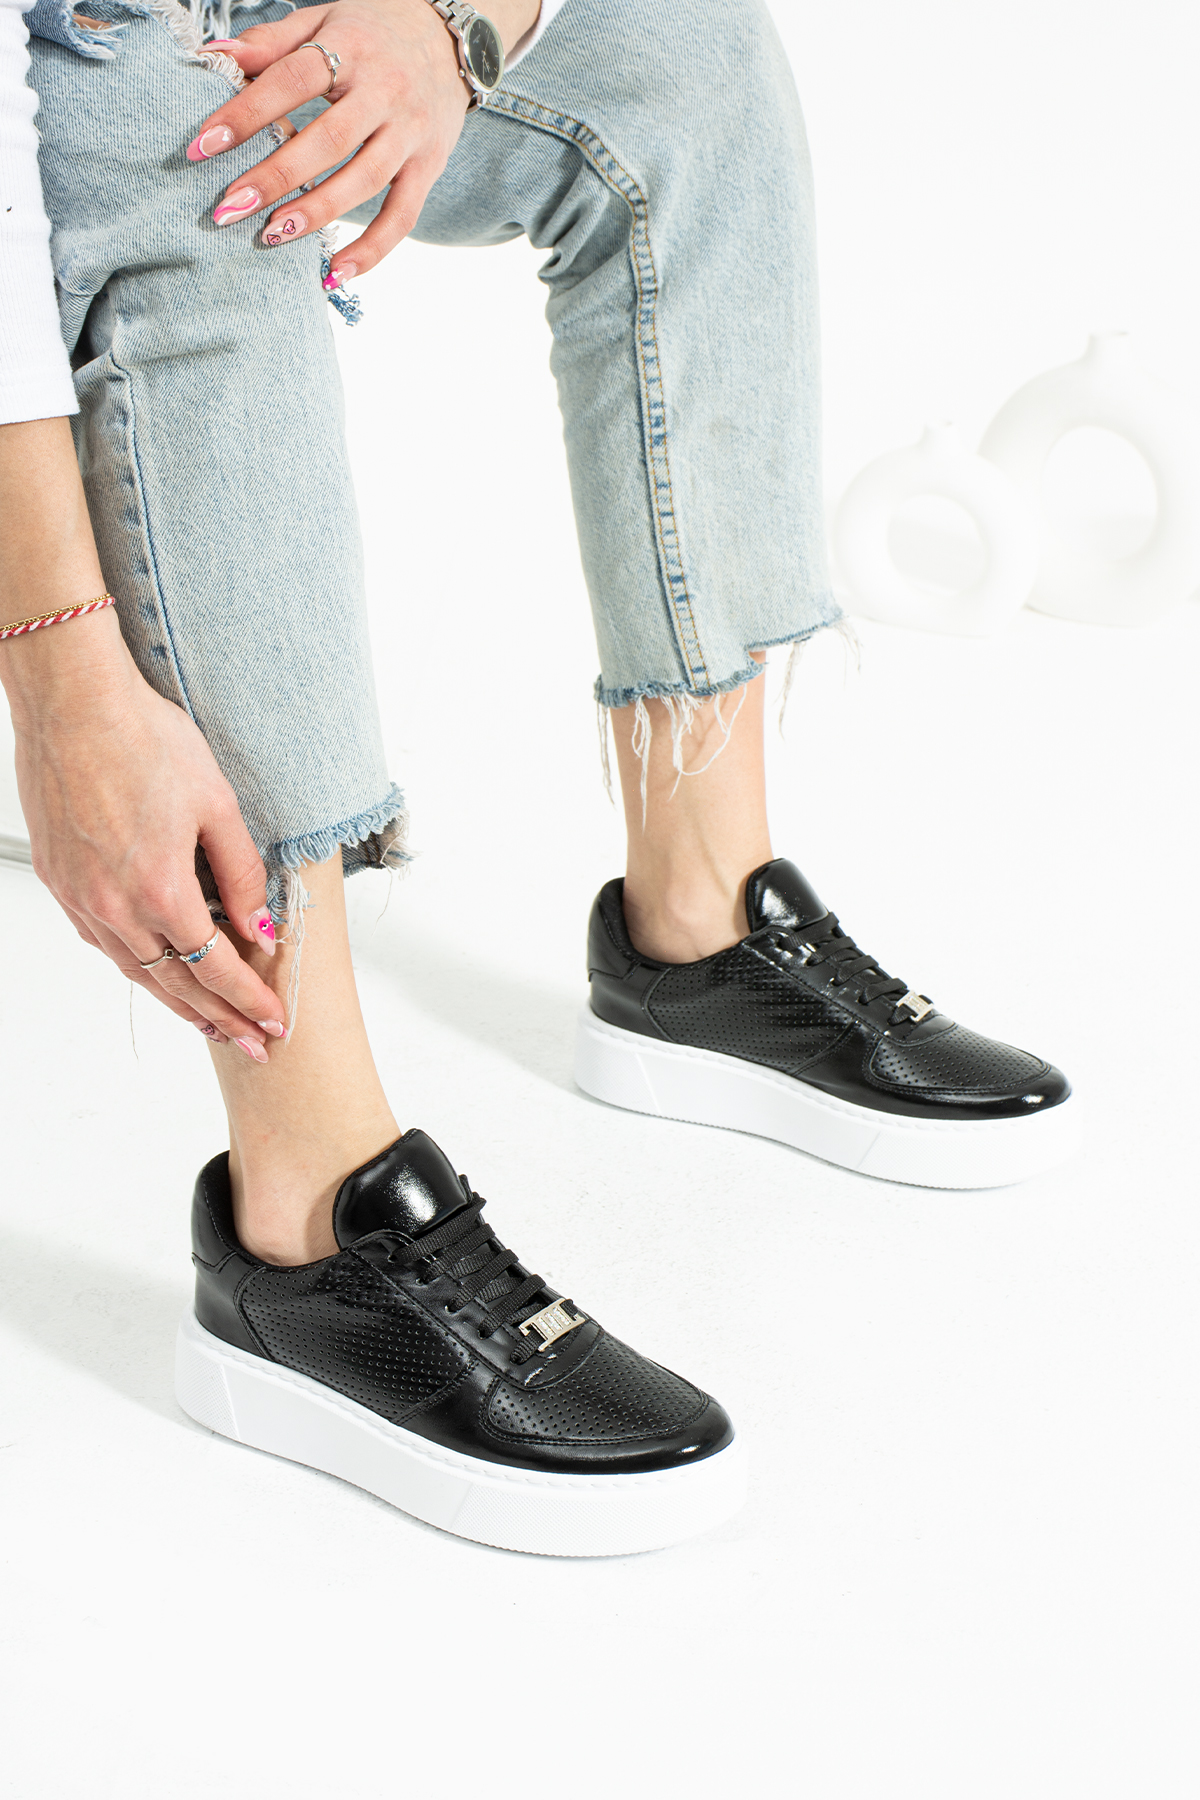 Metalik Siyah Dikişli Taban Taş Detay Bağcıklı Günlük Ortapedik İç Taban Kadın Sneaker